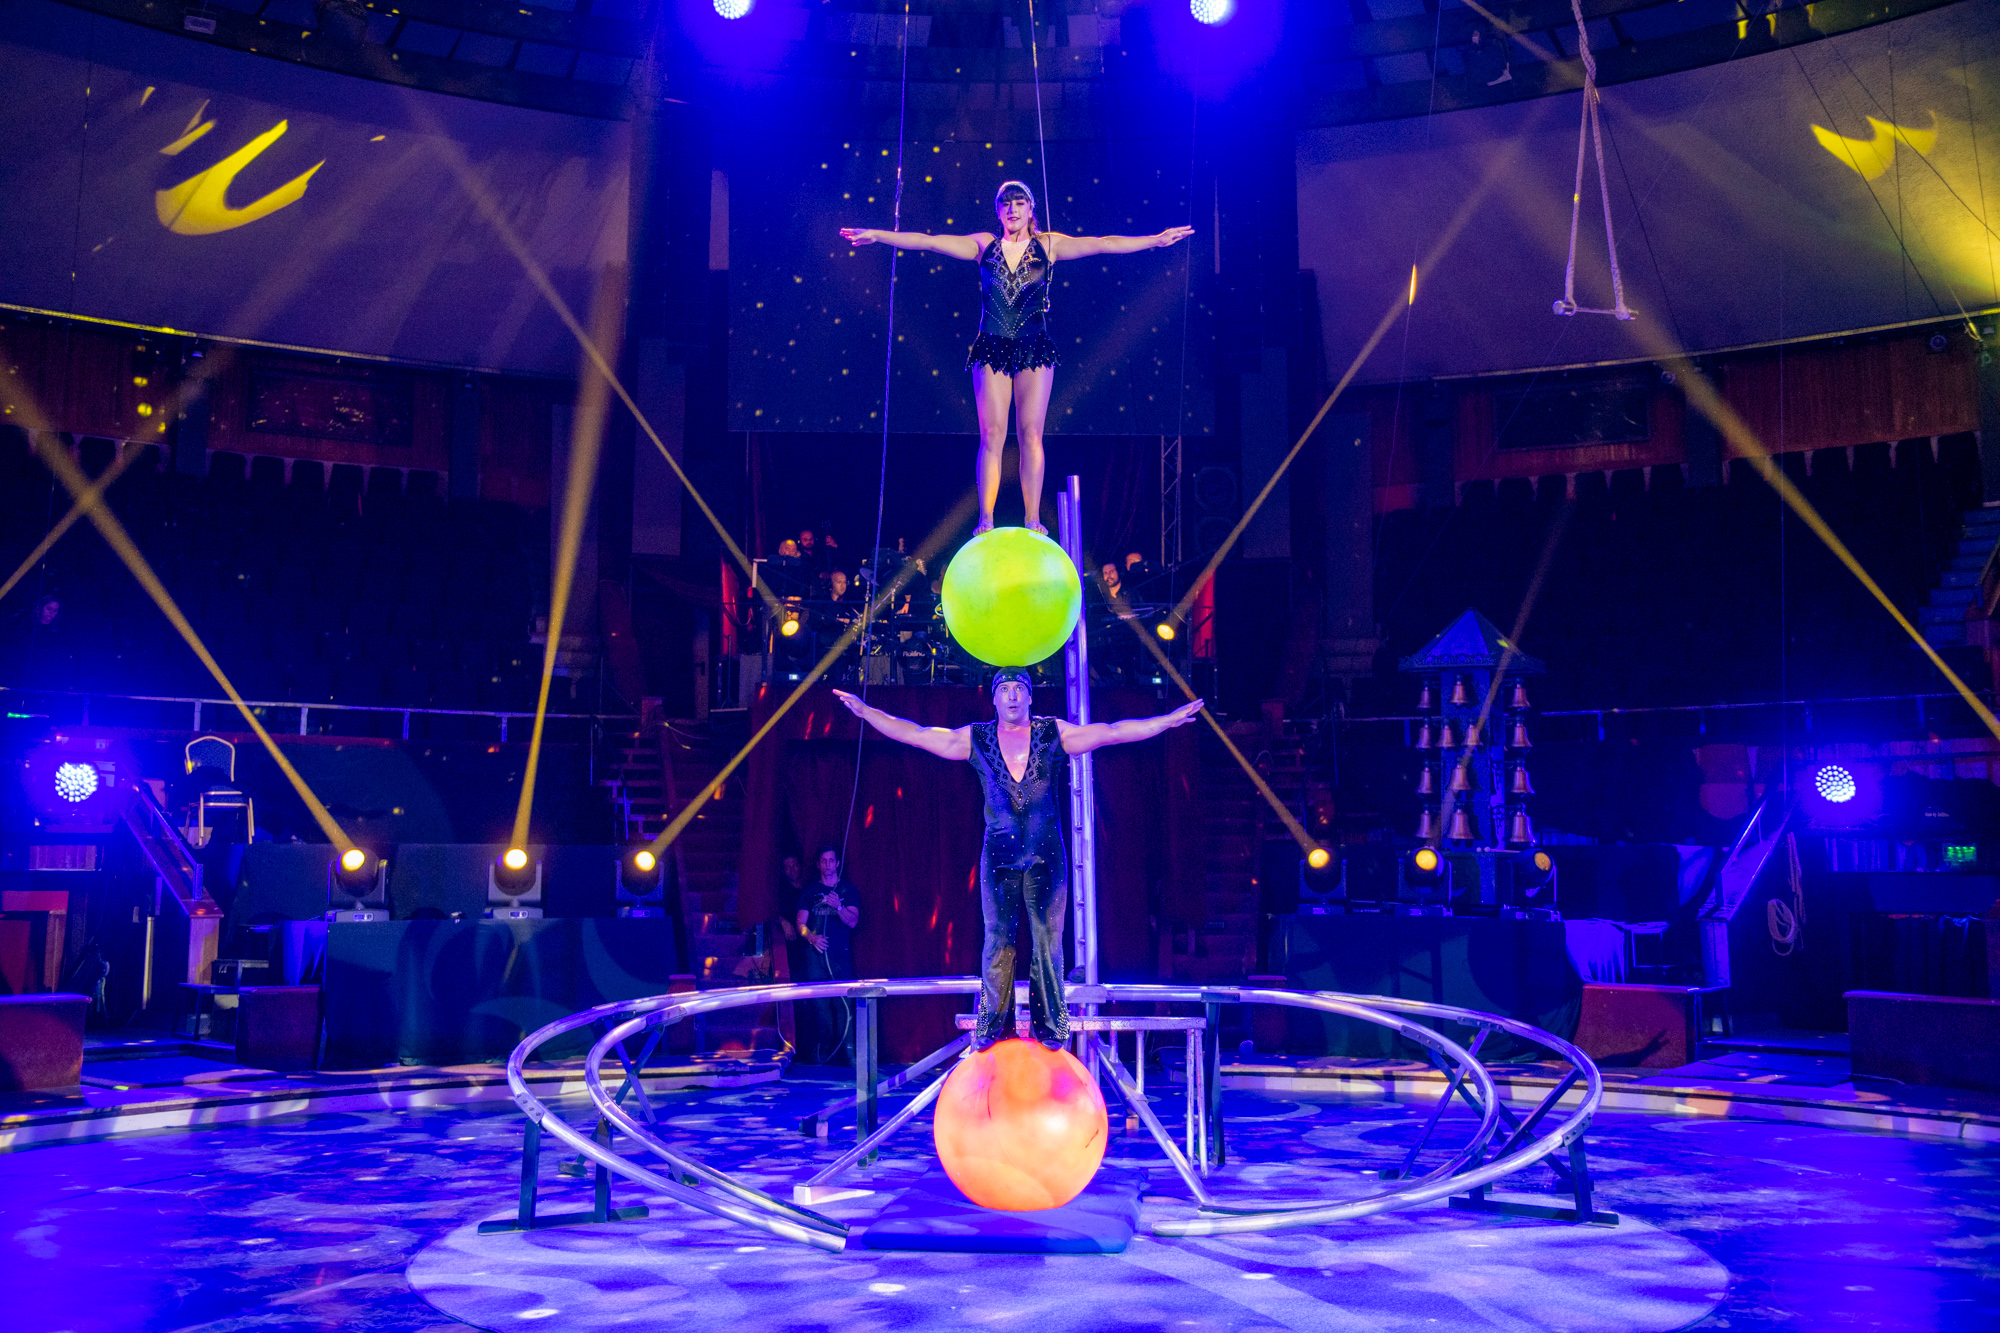 A Duo Kyrioz a január 12. és 17. között megrendezésre kerülő XIV. Budapest Nemzetközi Cirkuszfesztivál versenyprogramjában is fellép. 